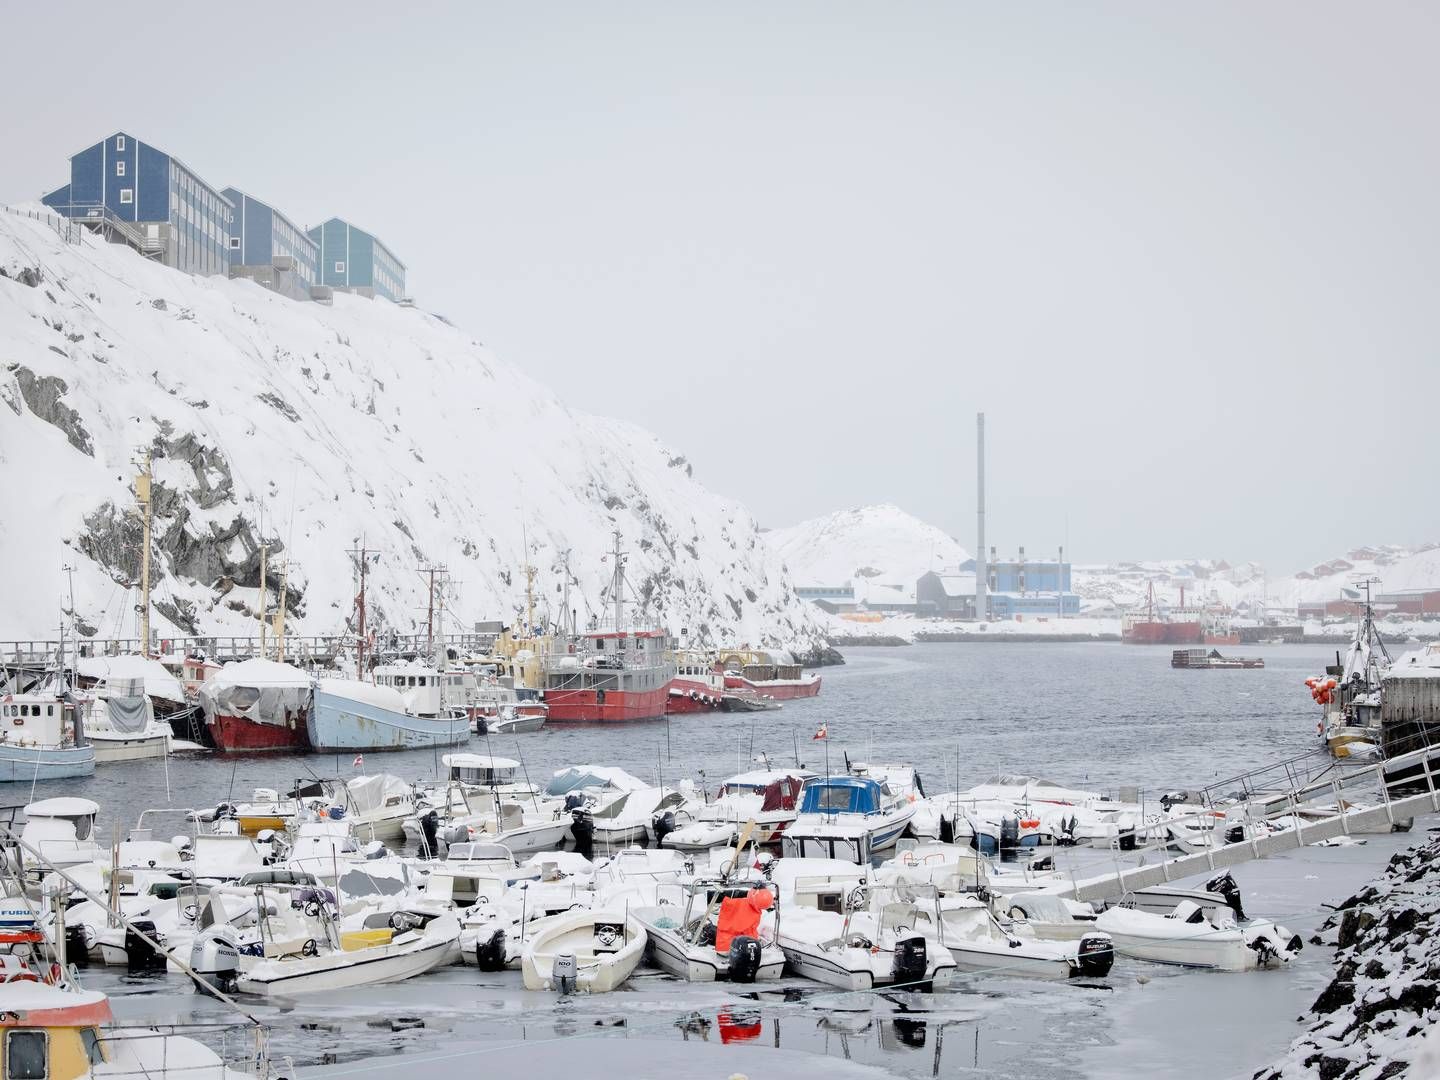 Advokatfirmaet Kirk Larsen & Ascanius slog i oktober sidste år dørene op til et kontor i Nuuk. | Foto: Valdemar Ren